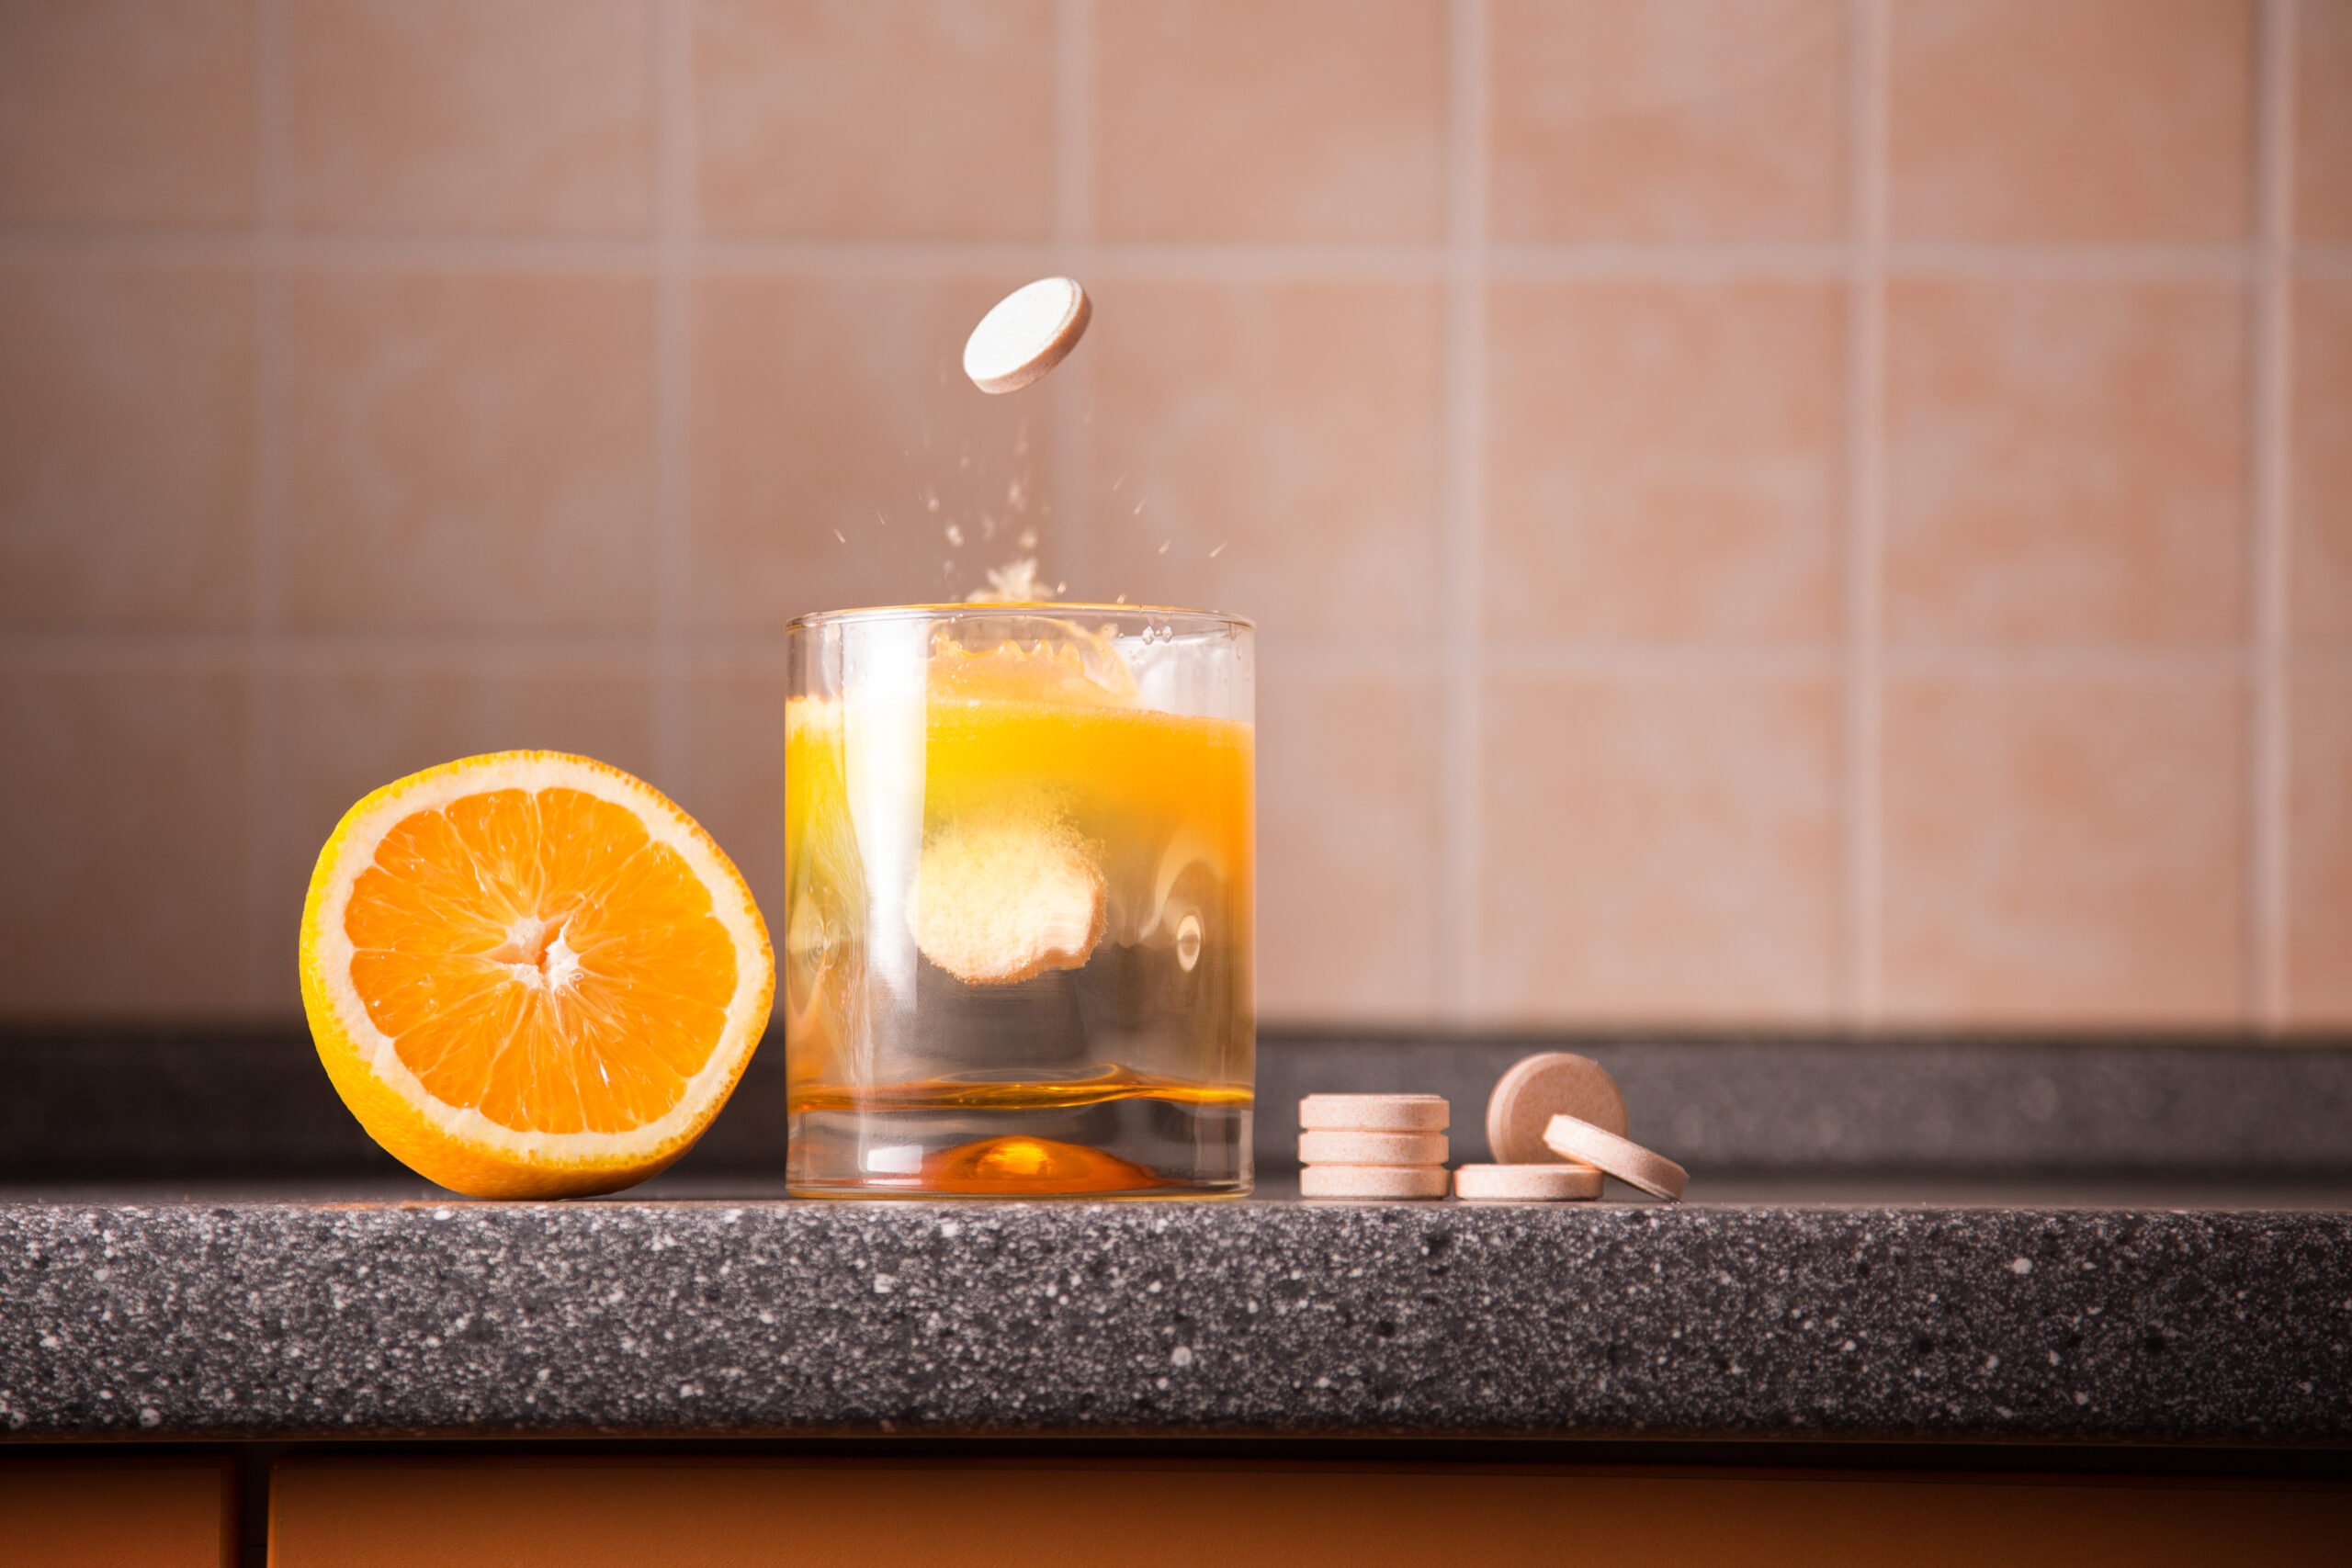 vaso con zumo de naranja